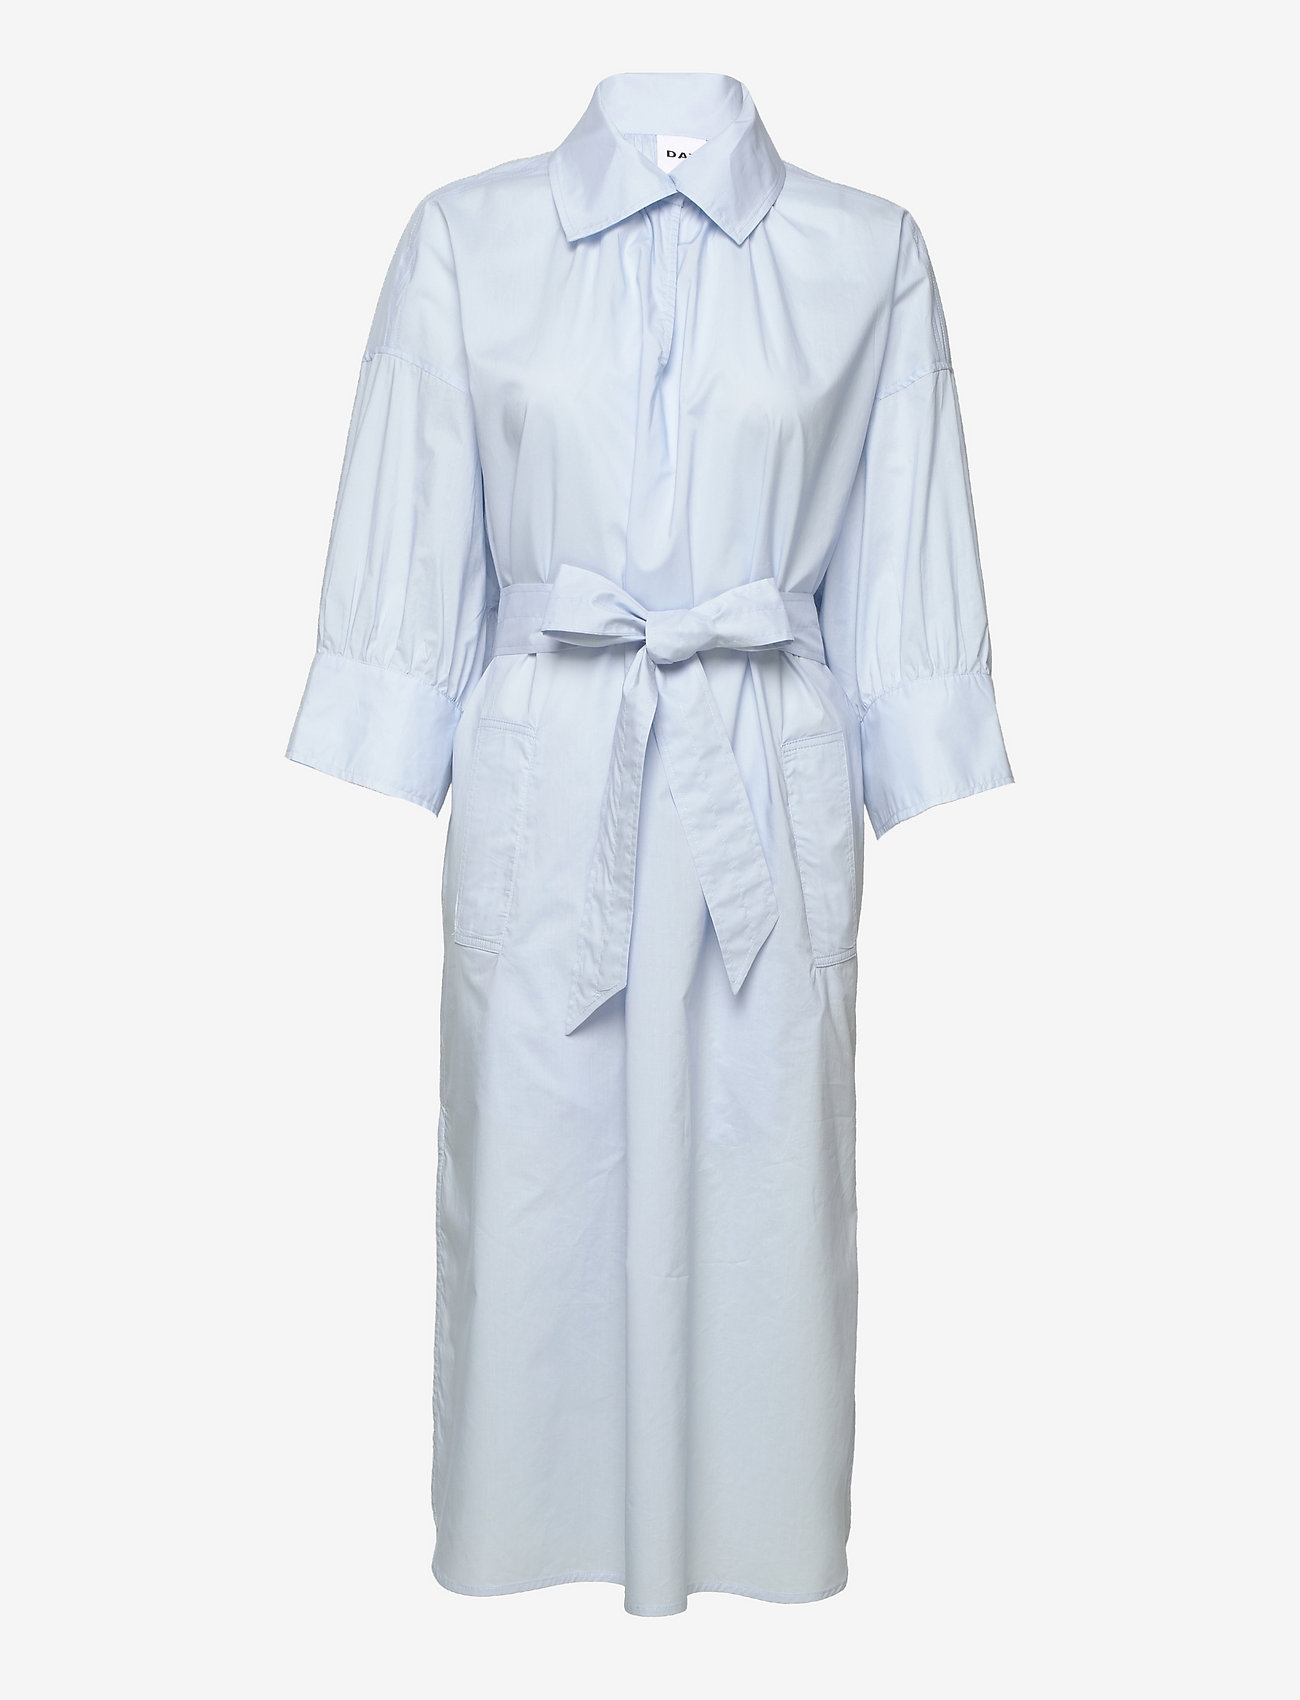 Day Birger et Mikkelsen - Colette - Coated Cotton - shirt dresses - light blue - 0